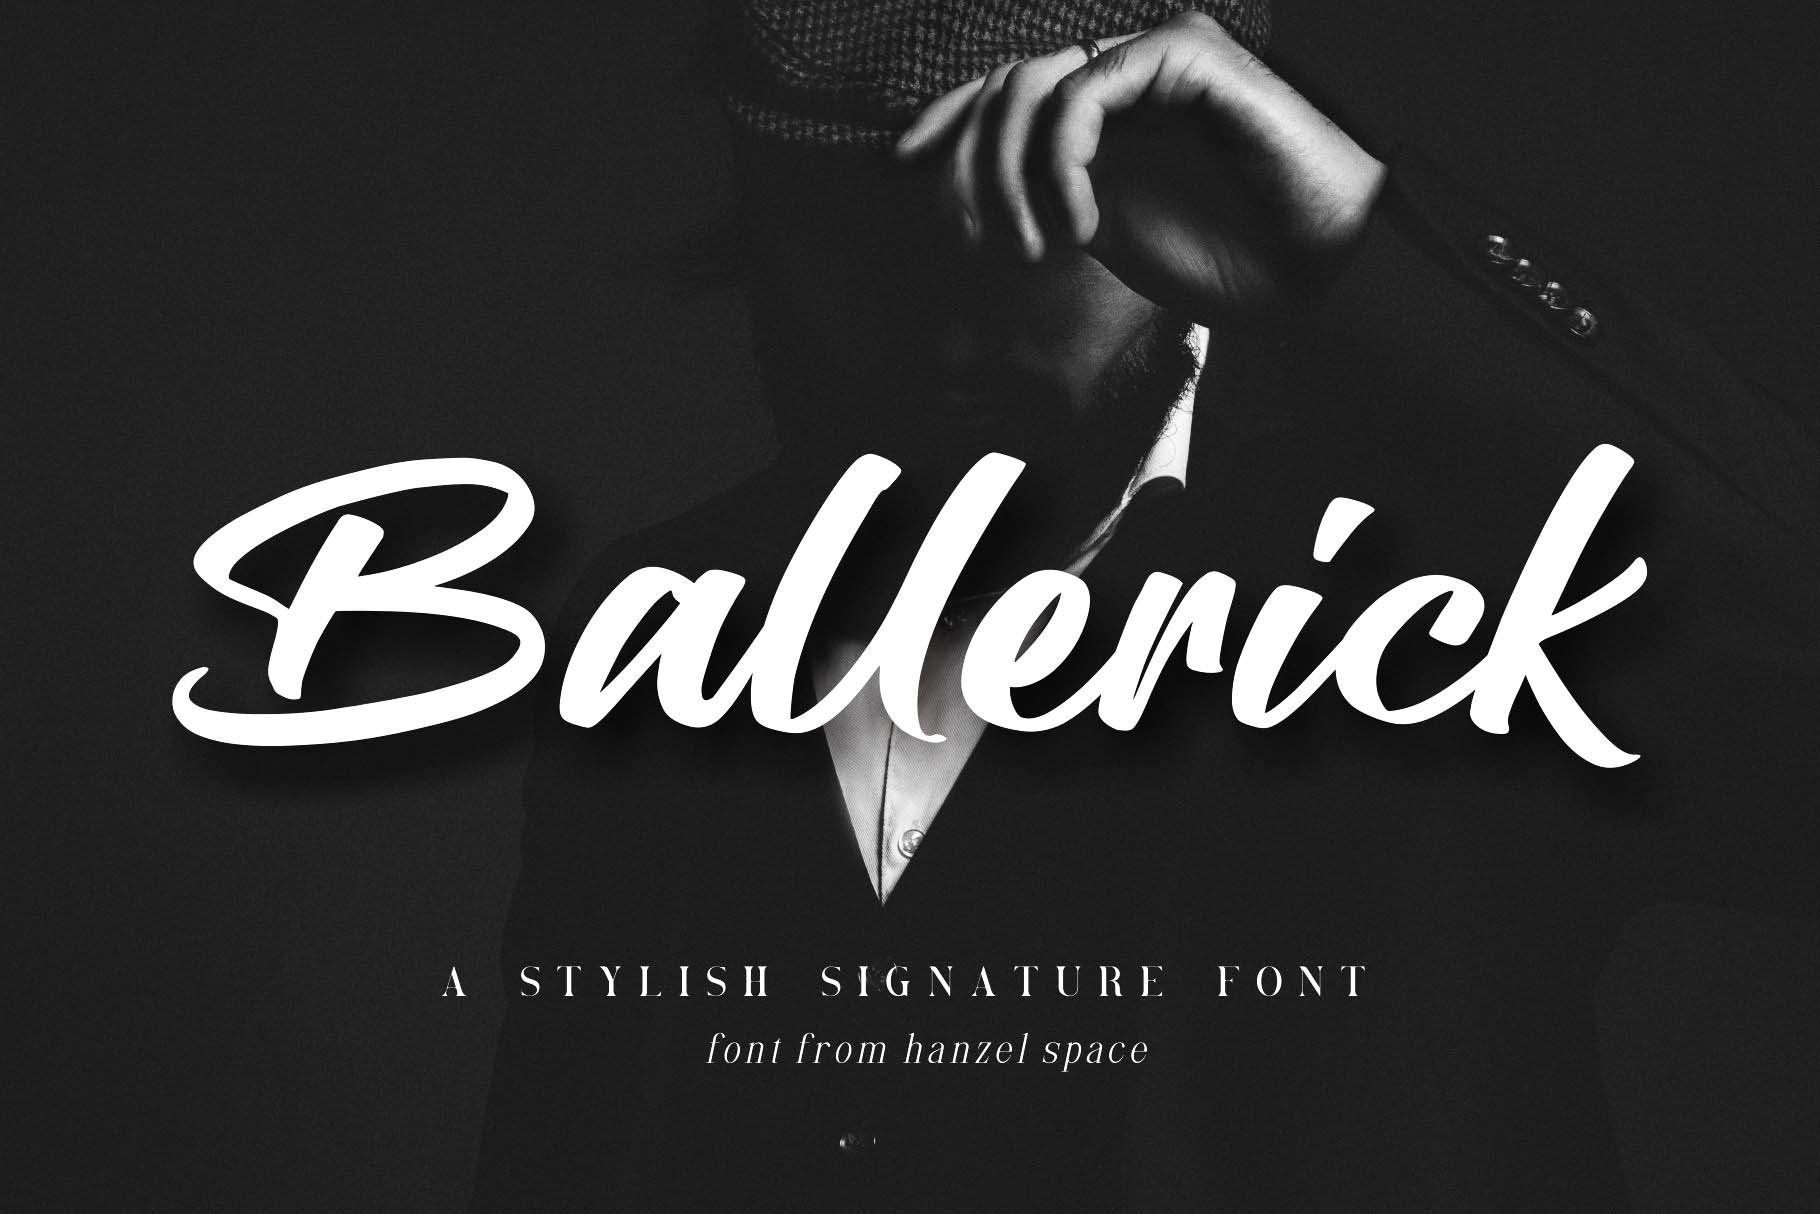 Ballerick Script Font